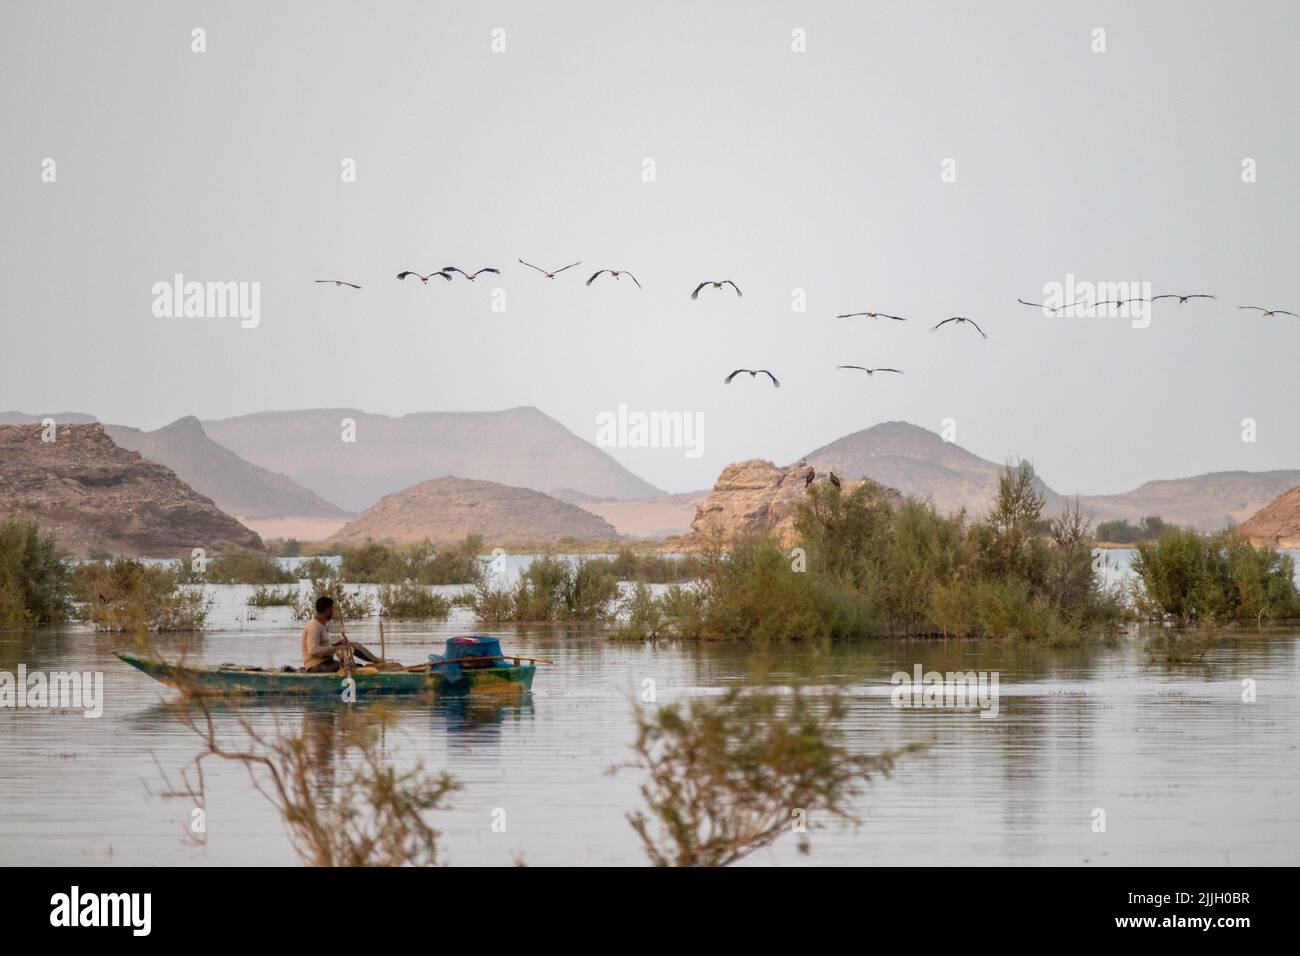 Un pêcheur sur un bateau sous un troupeau d'oiseaux volant au-dessus d'une rivière en Égypte Banque D'Images